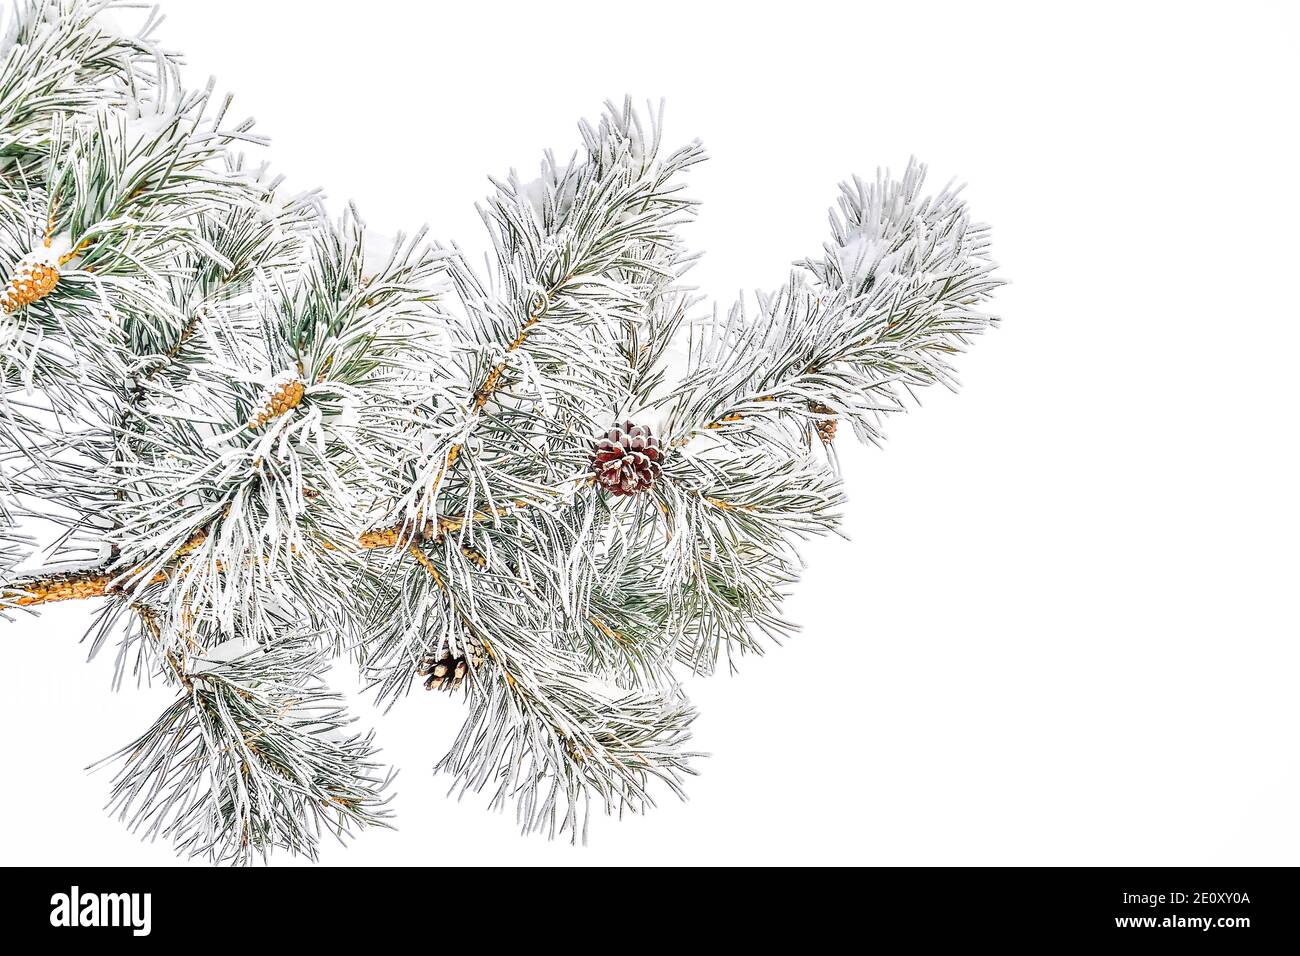 Branche de pin avec des cônes et un hoarfrust ou une rime et de la neige sur des aiguilles vertes, isolée sur fond blanc. Arrière-plan saisonnier d'hiver à la dure givrée W Banque D'Images